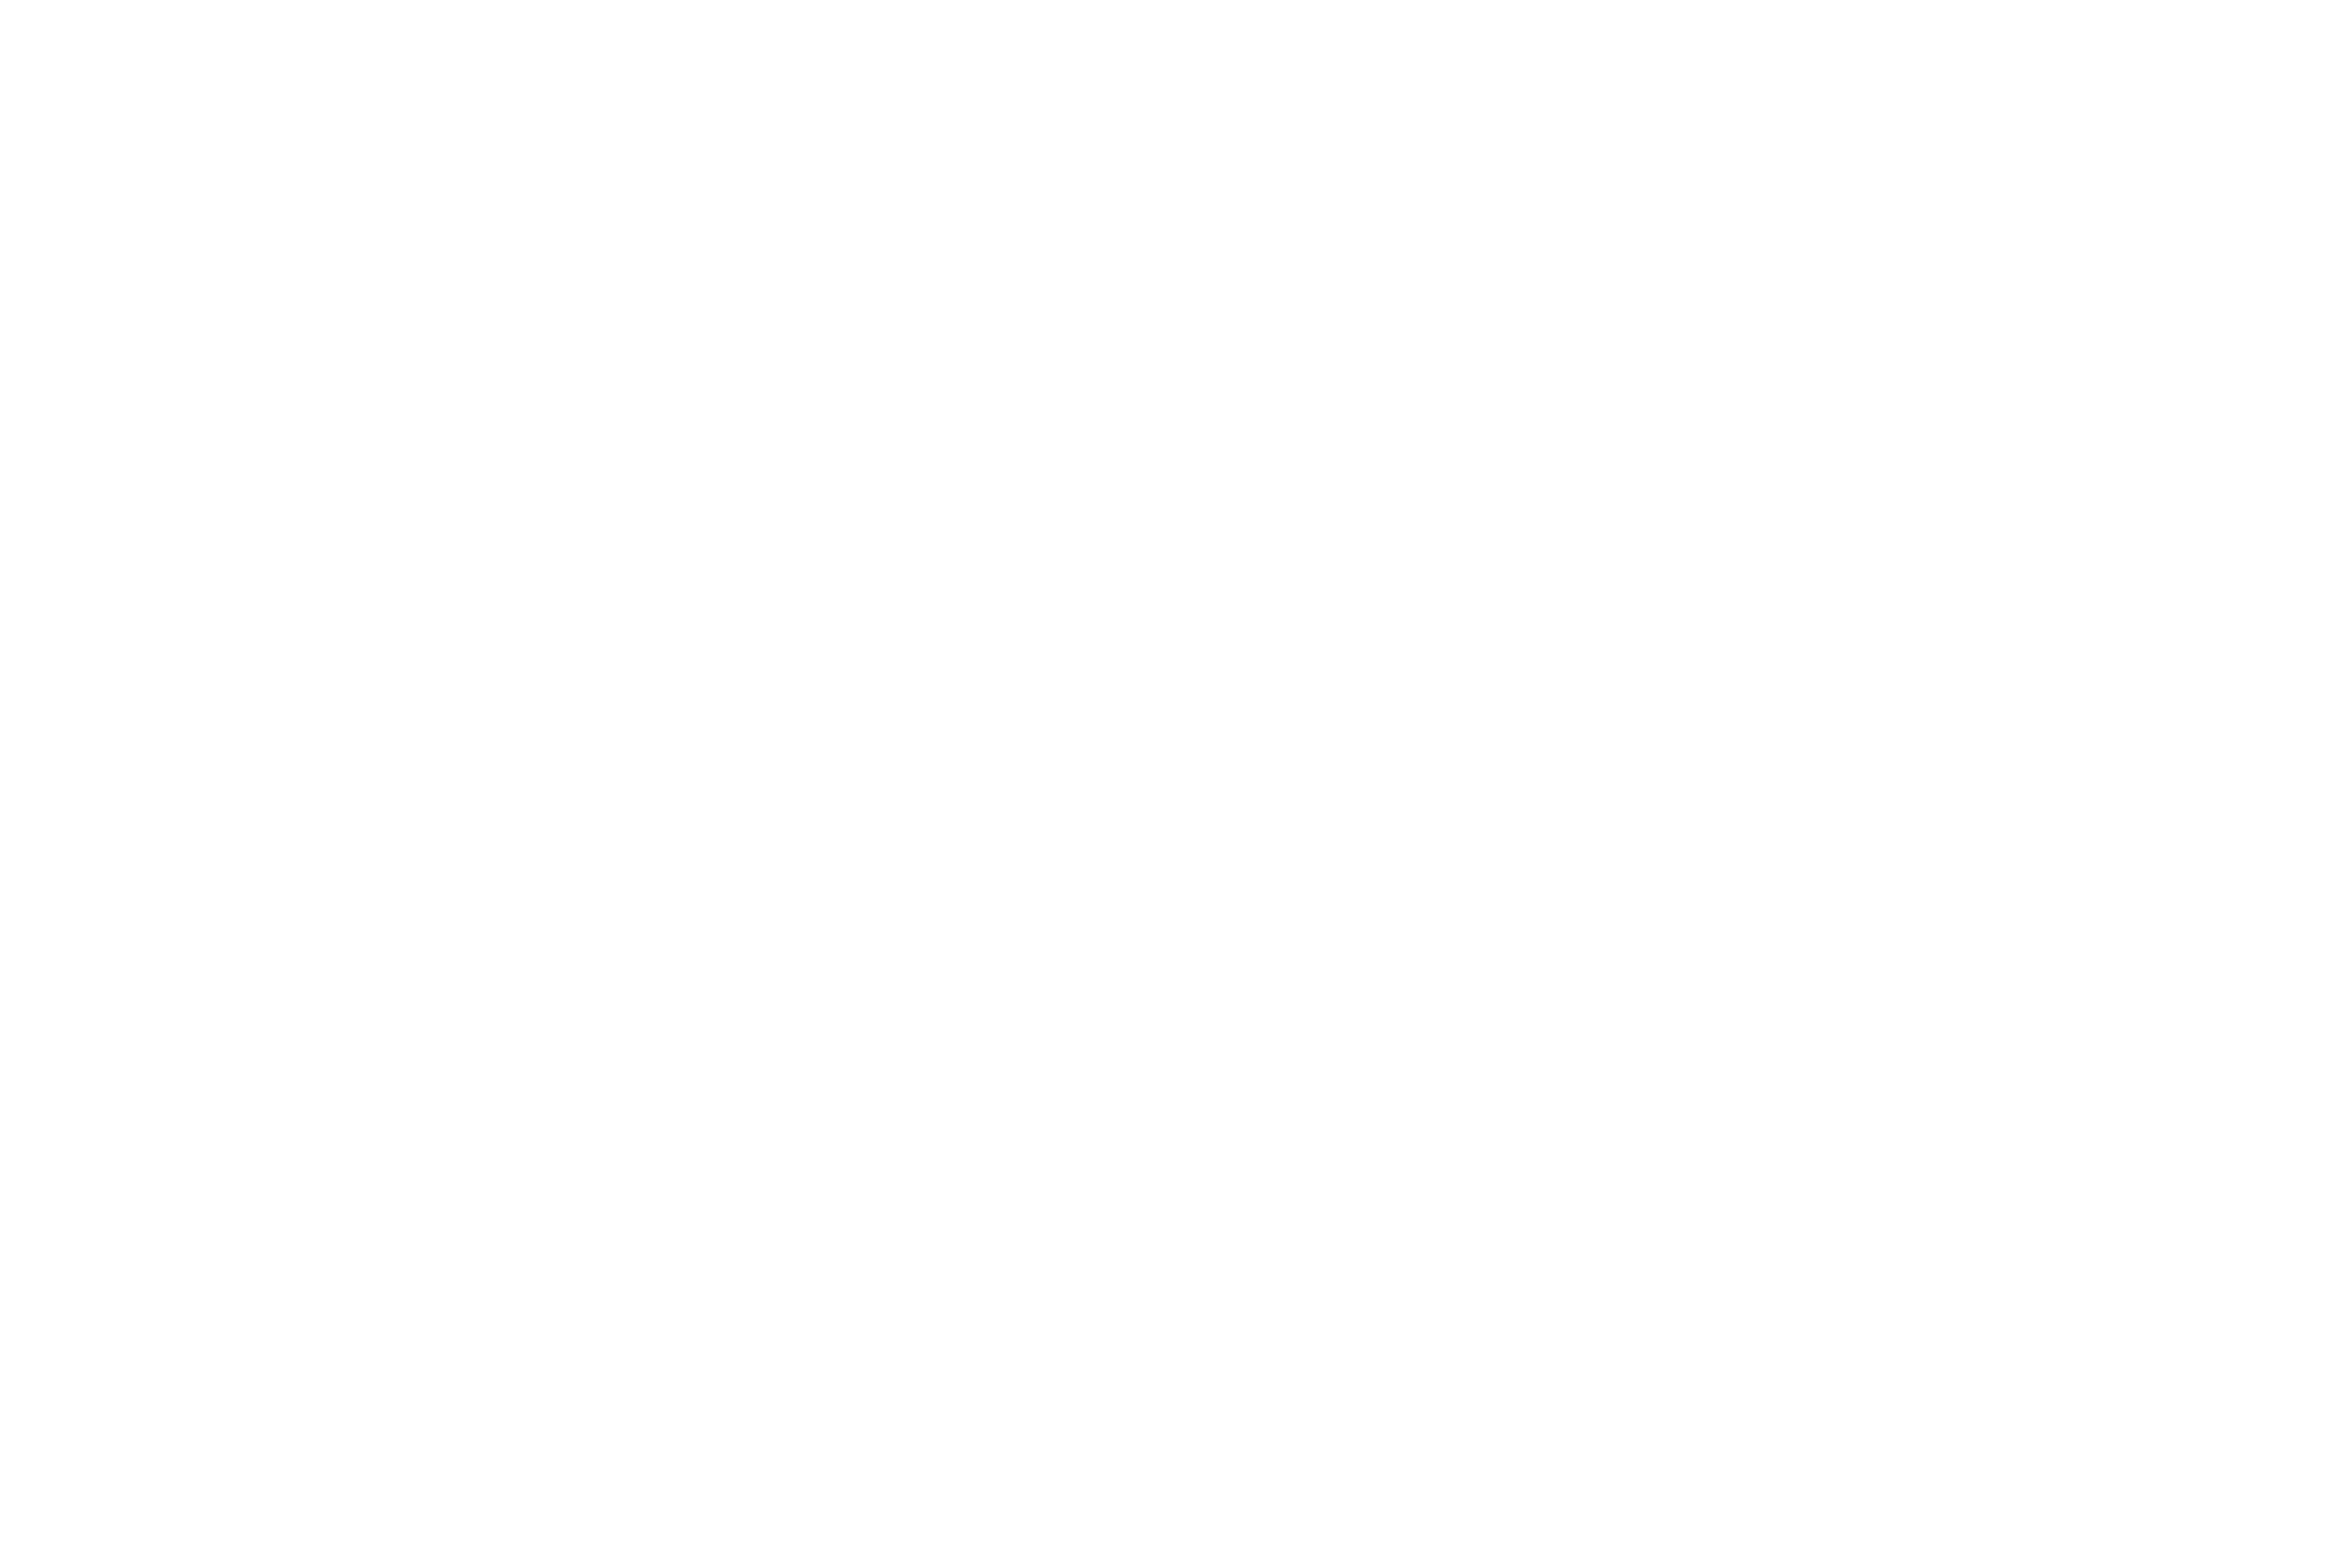 ThreadUP logo in white